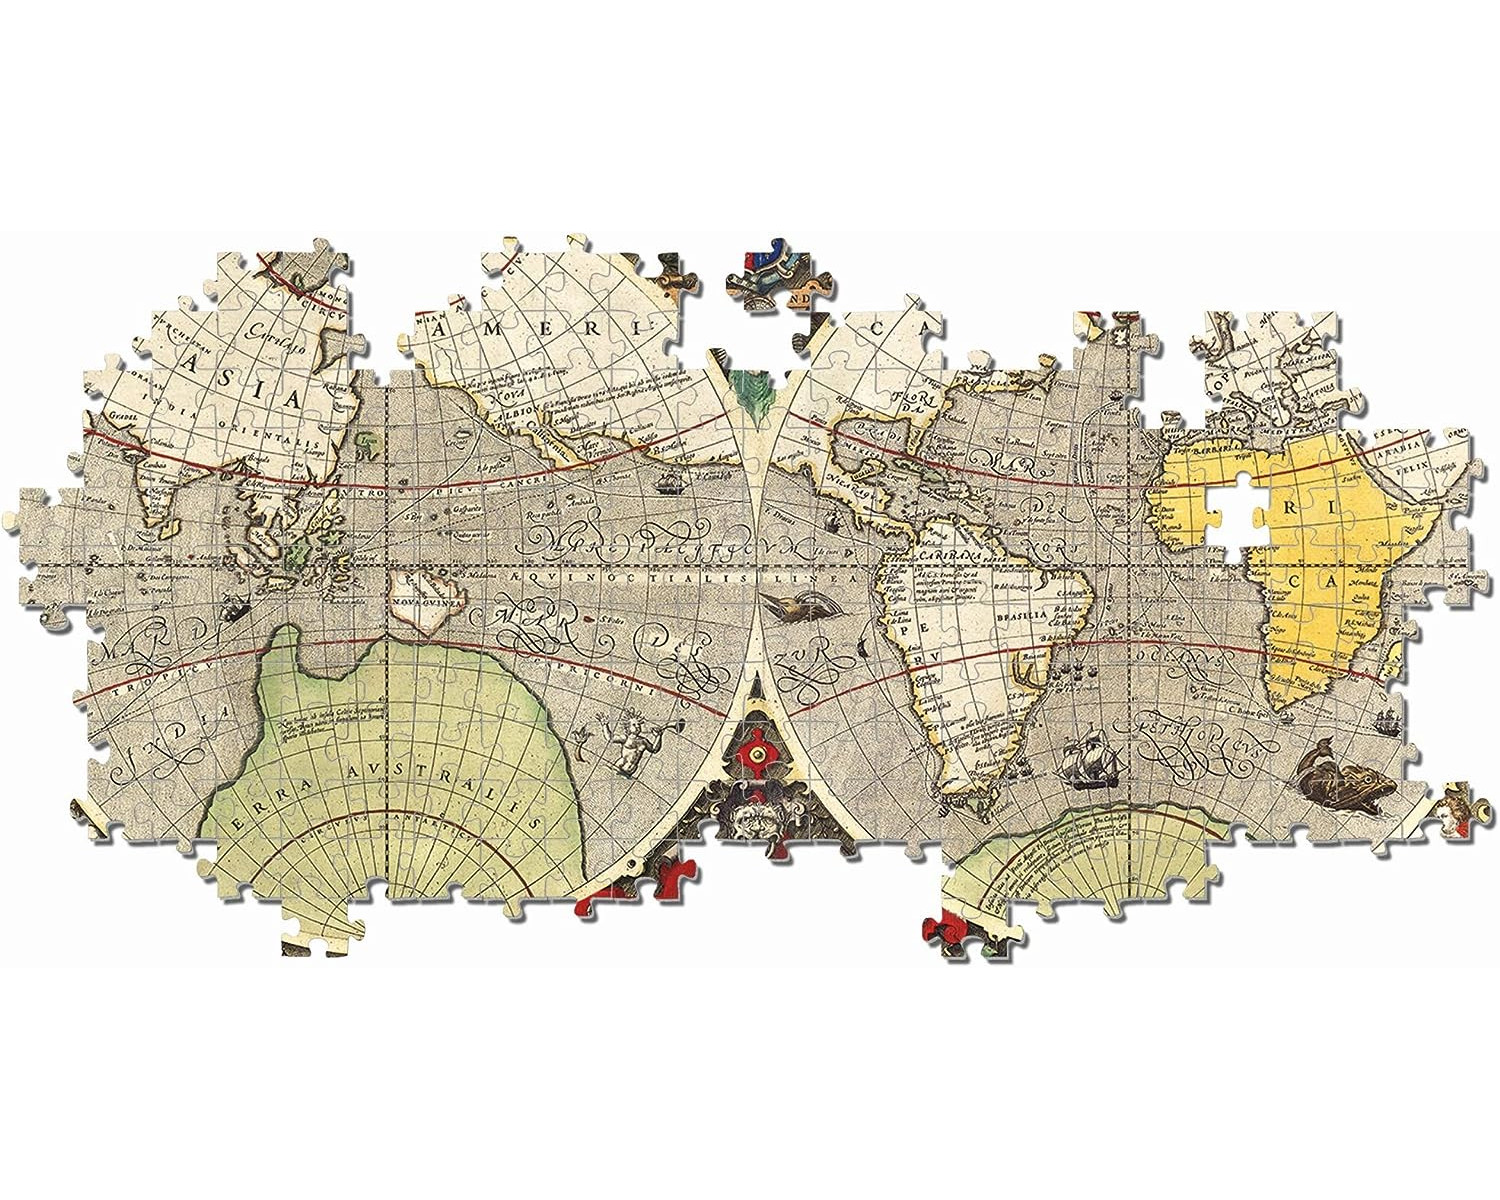 CLEMENTONI 97971 - Antike See-Karte Puzzle Teile) (6000